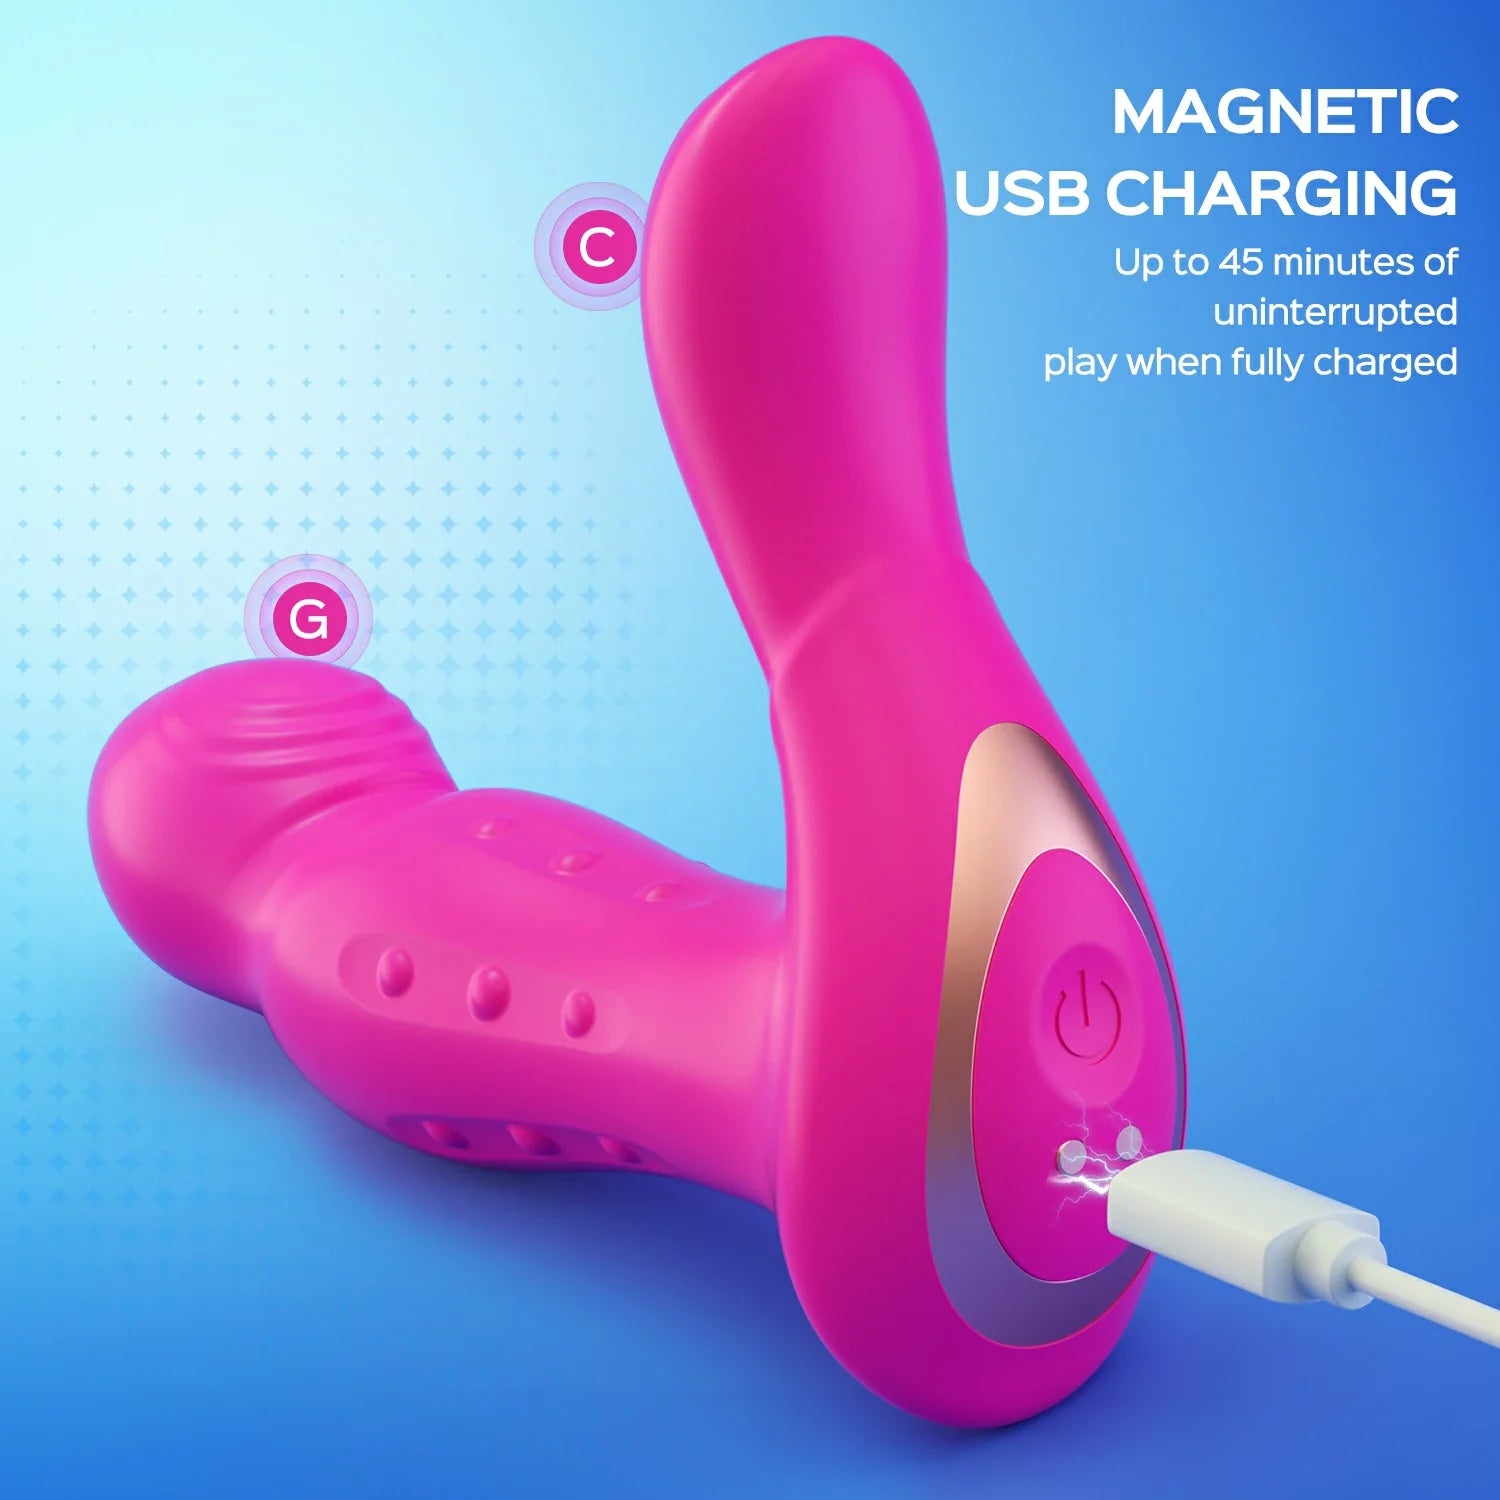 KYLIE ferngesteuerter G-Punkt-Vibrator und Klitoris-Stimulator